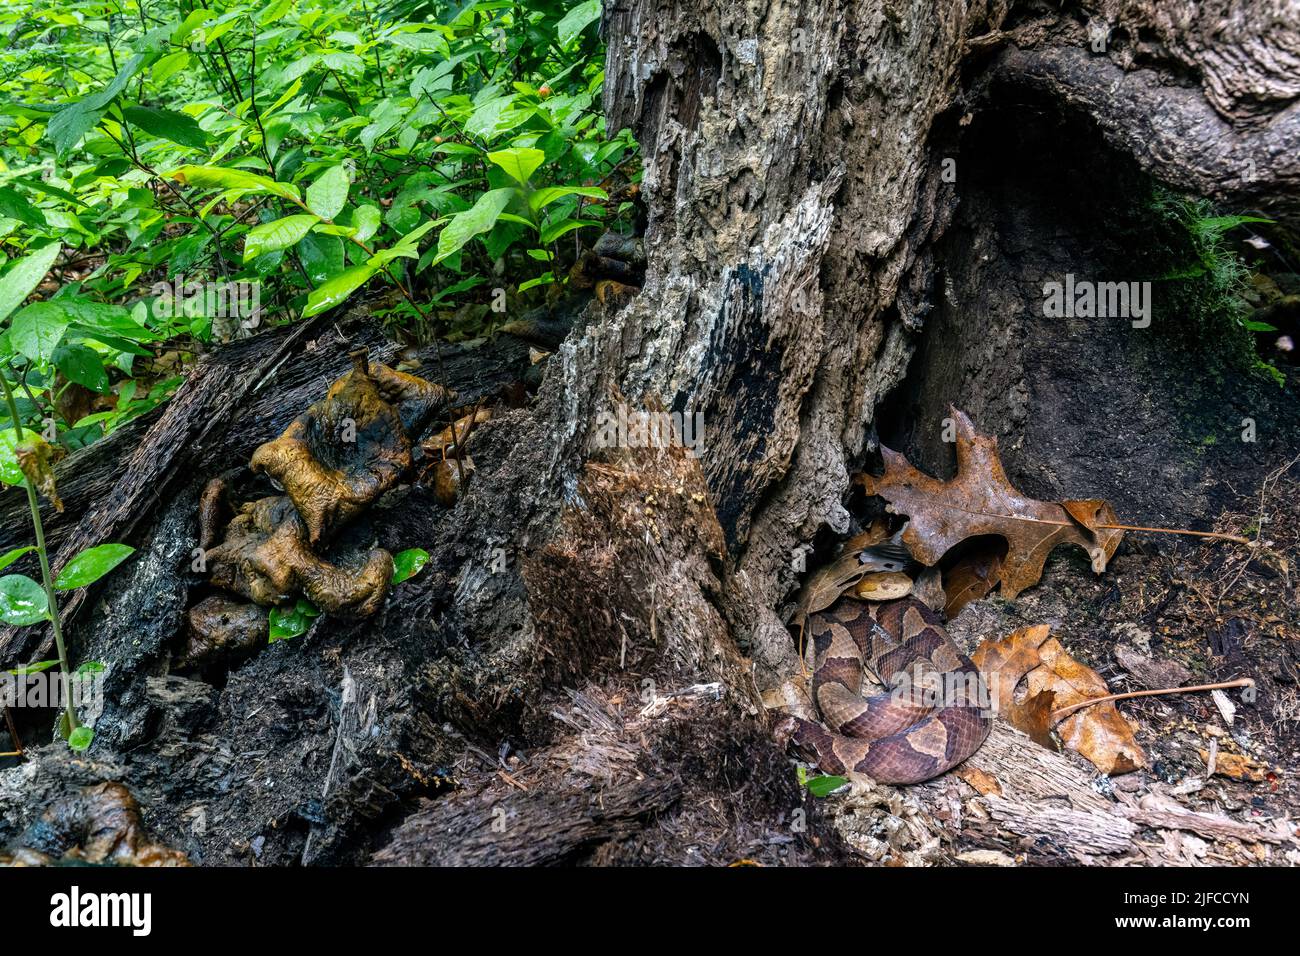 Testa di copperone orientale (Agkistrodon contortrix) che si nasconde in ceppo di albero - Bracken Preserve, Brevard, North Carolina, USA Foto Stock